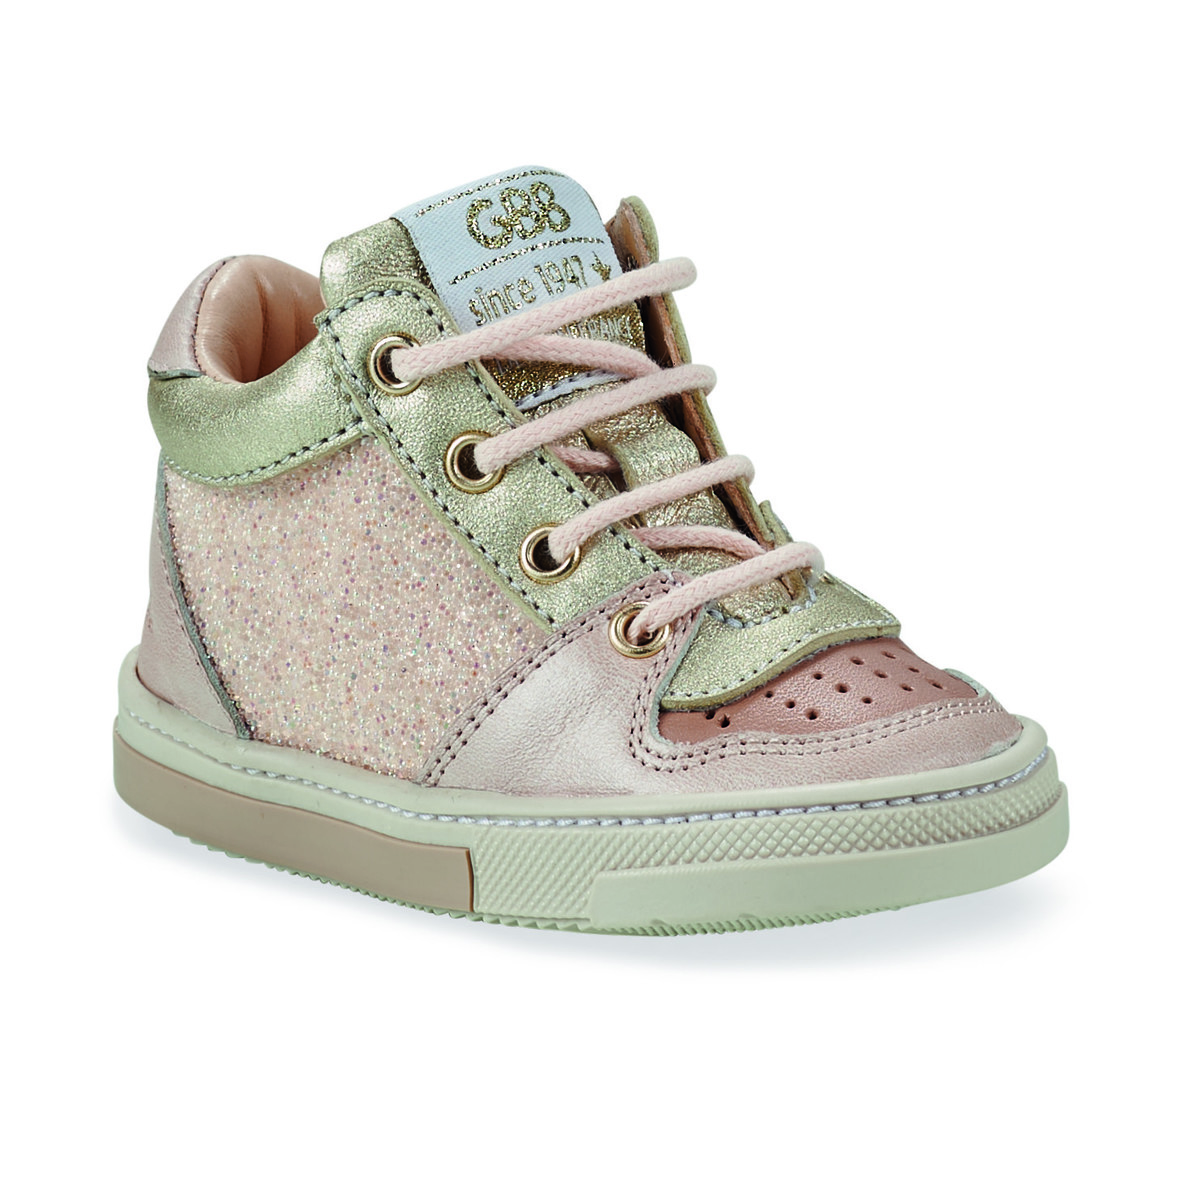 Παπούτσια Κορίτσι Ψηλά Sneakers GBB ROMELINE Ροζ